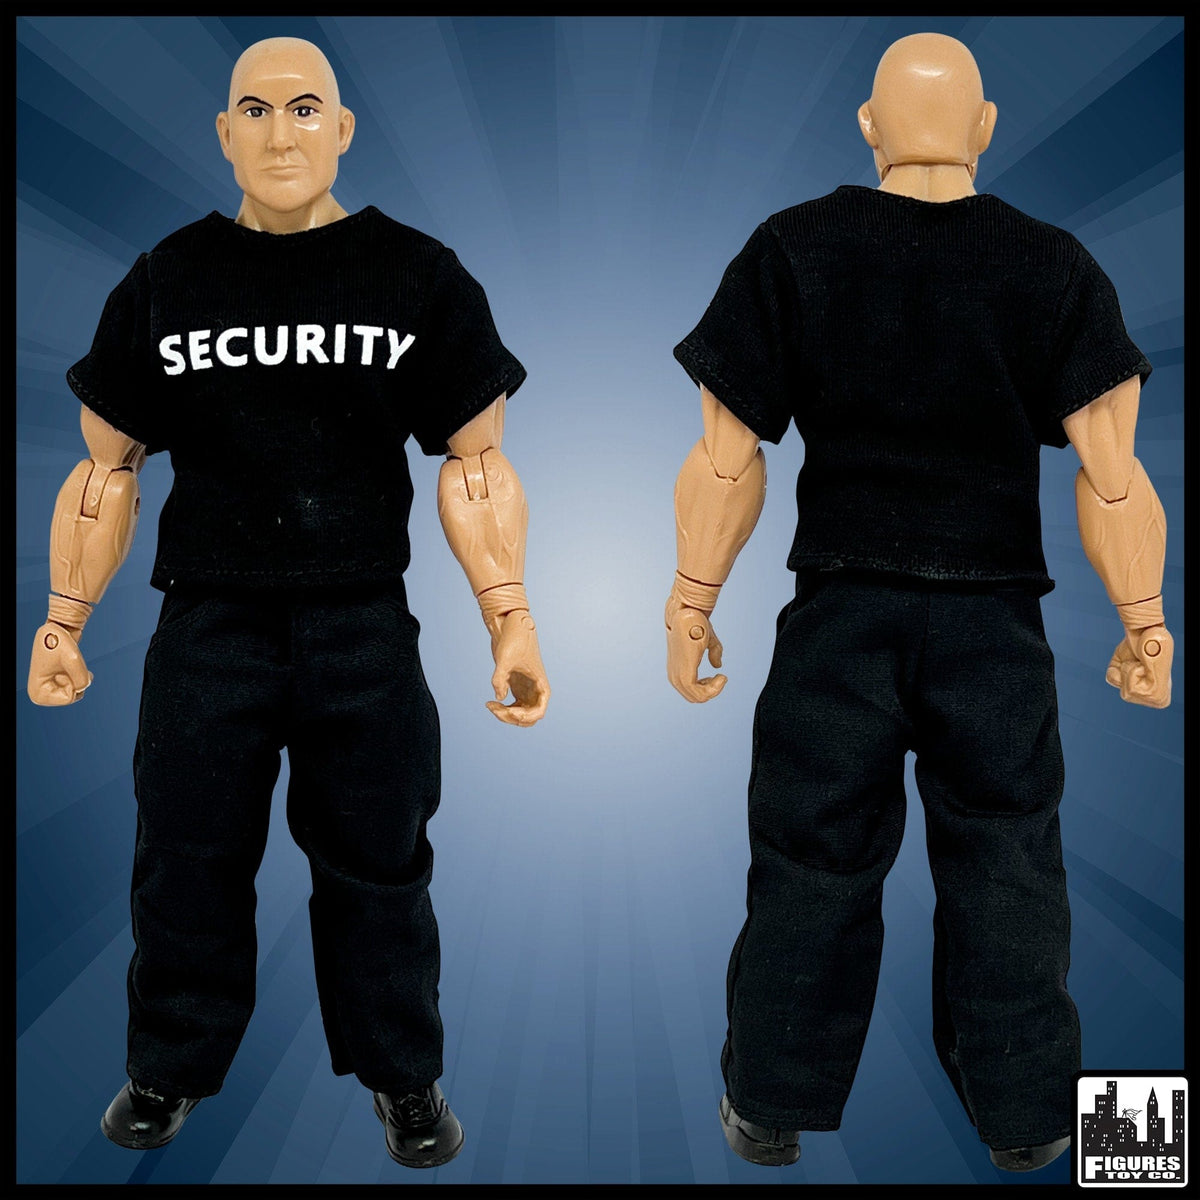 Security Guard, Event Staff Worker &amp; EMT Action Figure for WWE Wrestling Figures